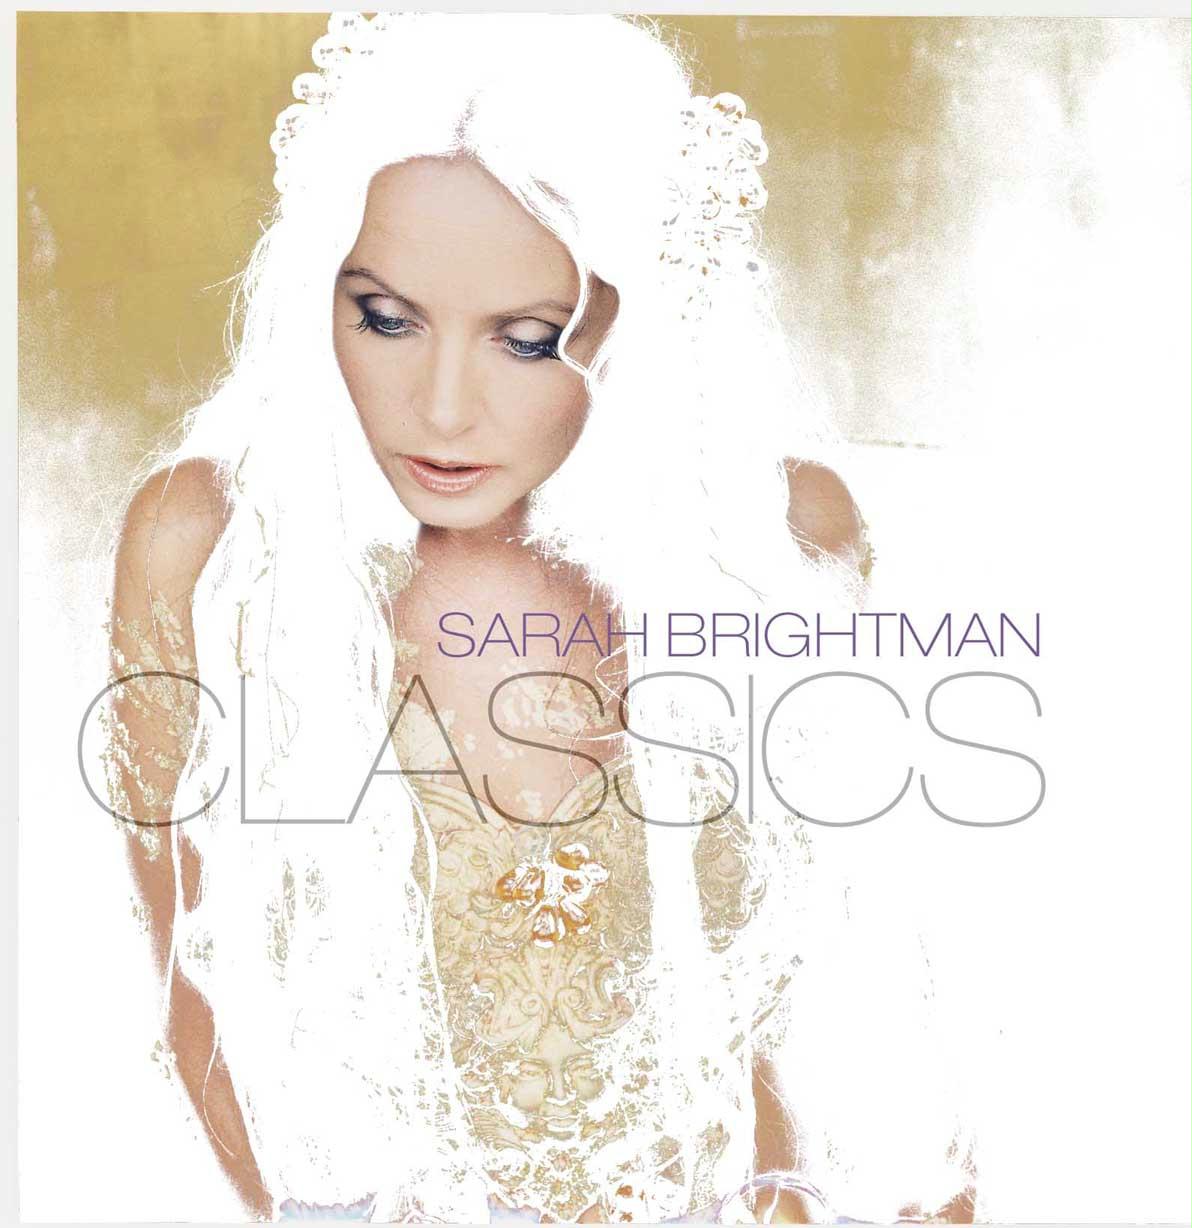 Sarah Brightman -- Classics -- history of announcements